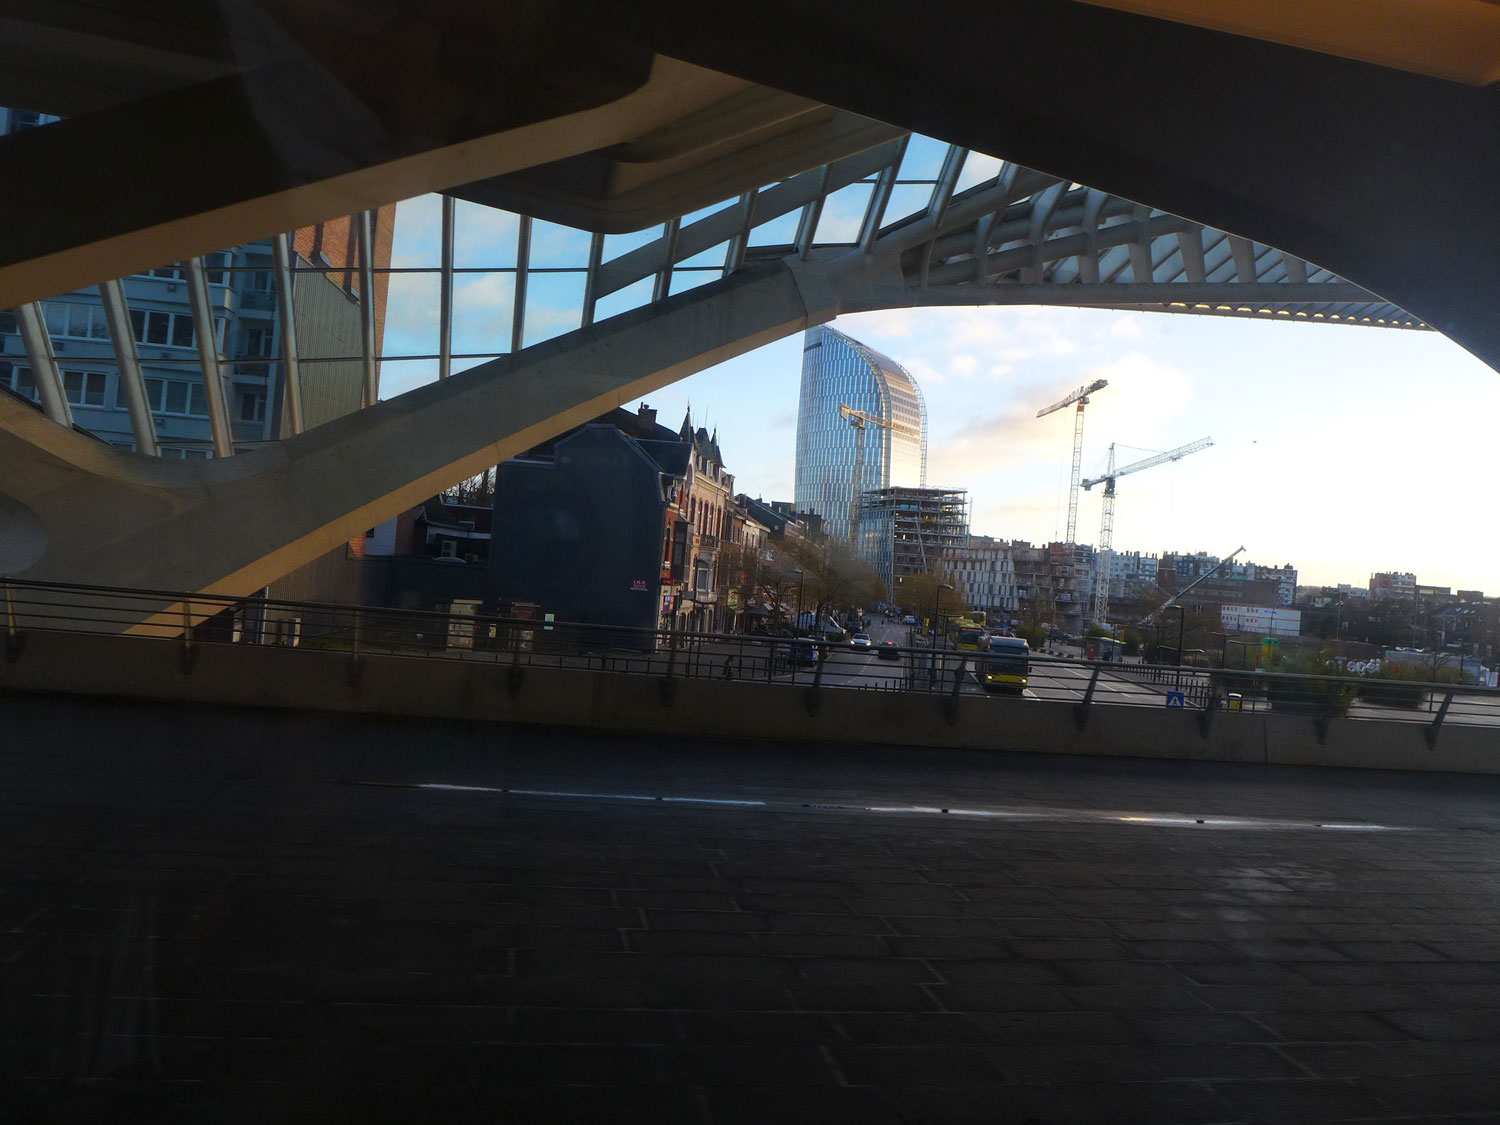 1h00 plus tard, arrivée à Liège (Luik). C’est la première agglomération de Wallonie, la troisième agglomération de Belgique après Bruxelles et Anvers © Globe Reporters